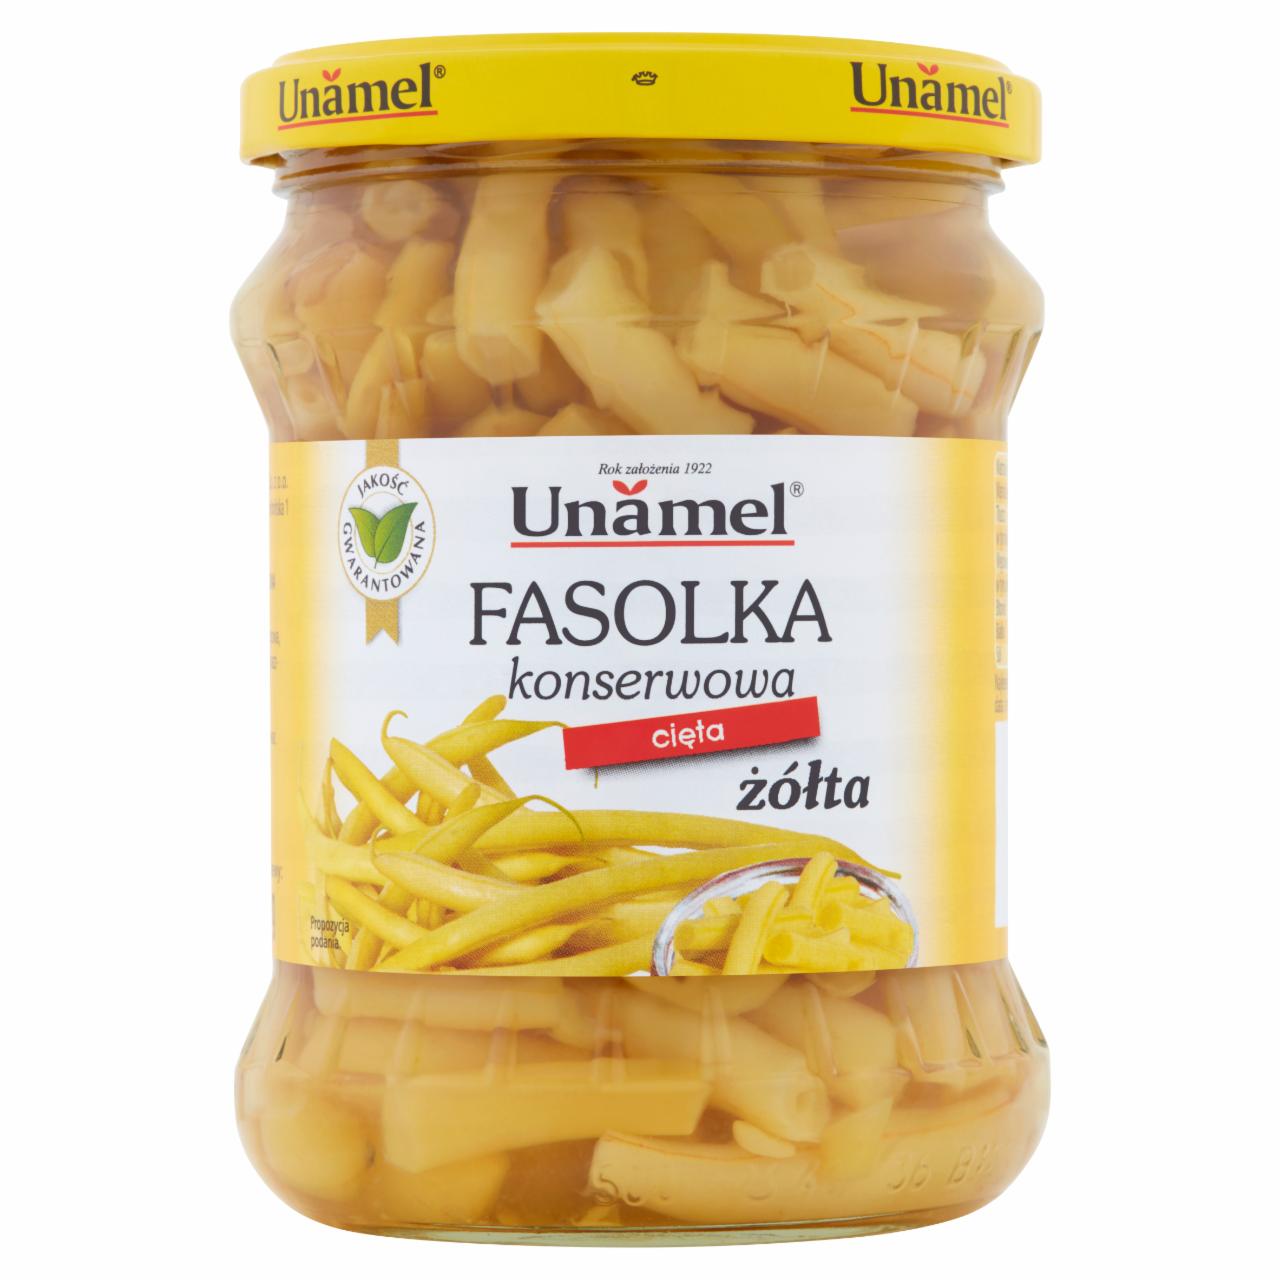 Zdjęcia - Unamel Fasolka konserwowa cięta żółta